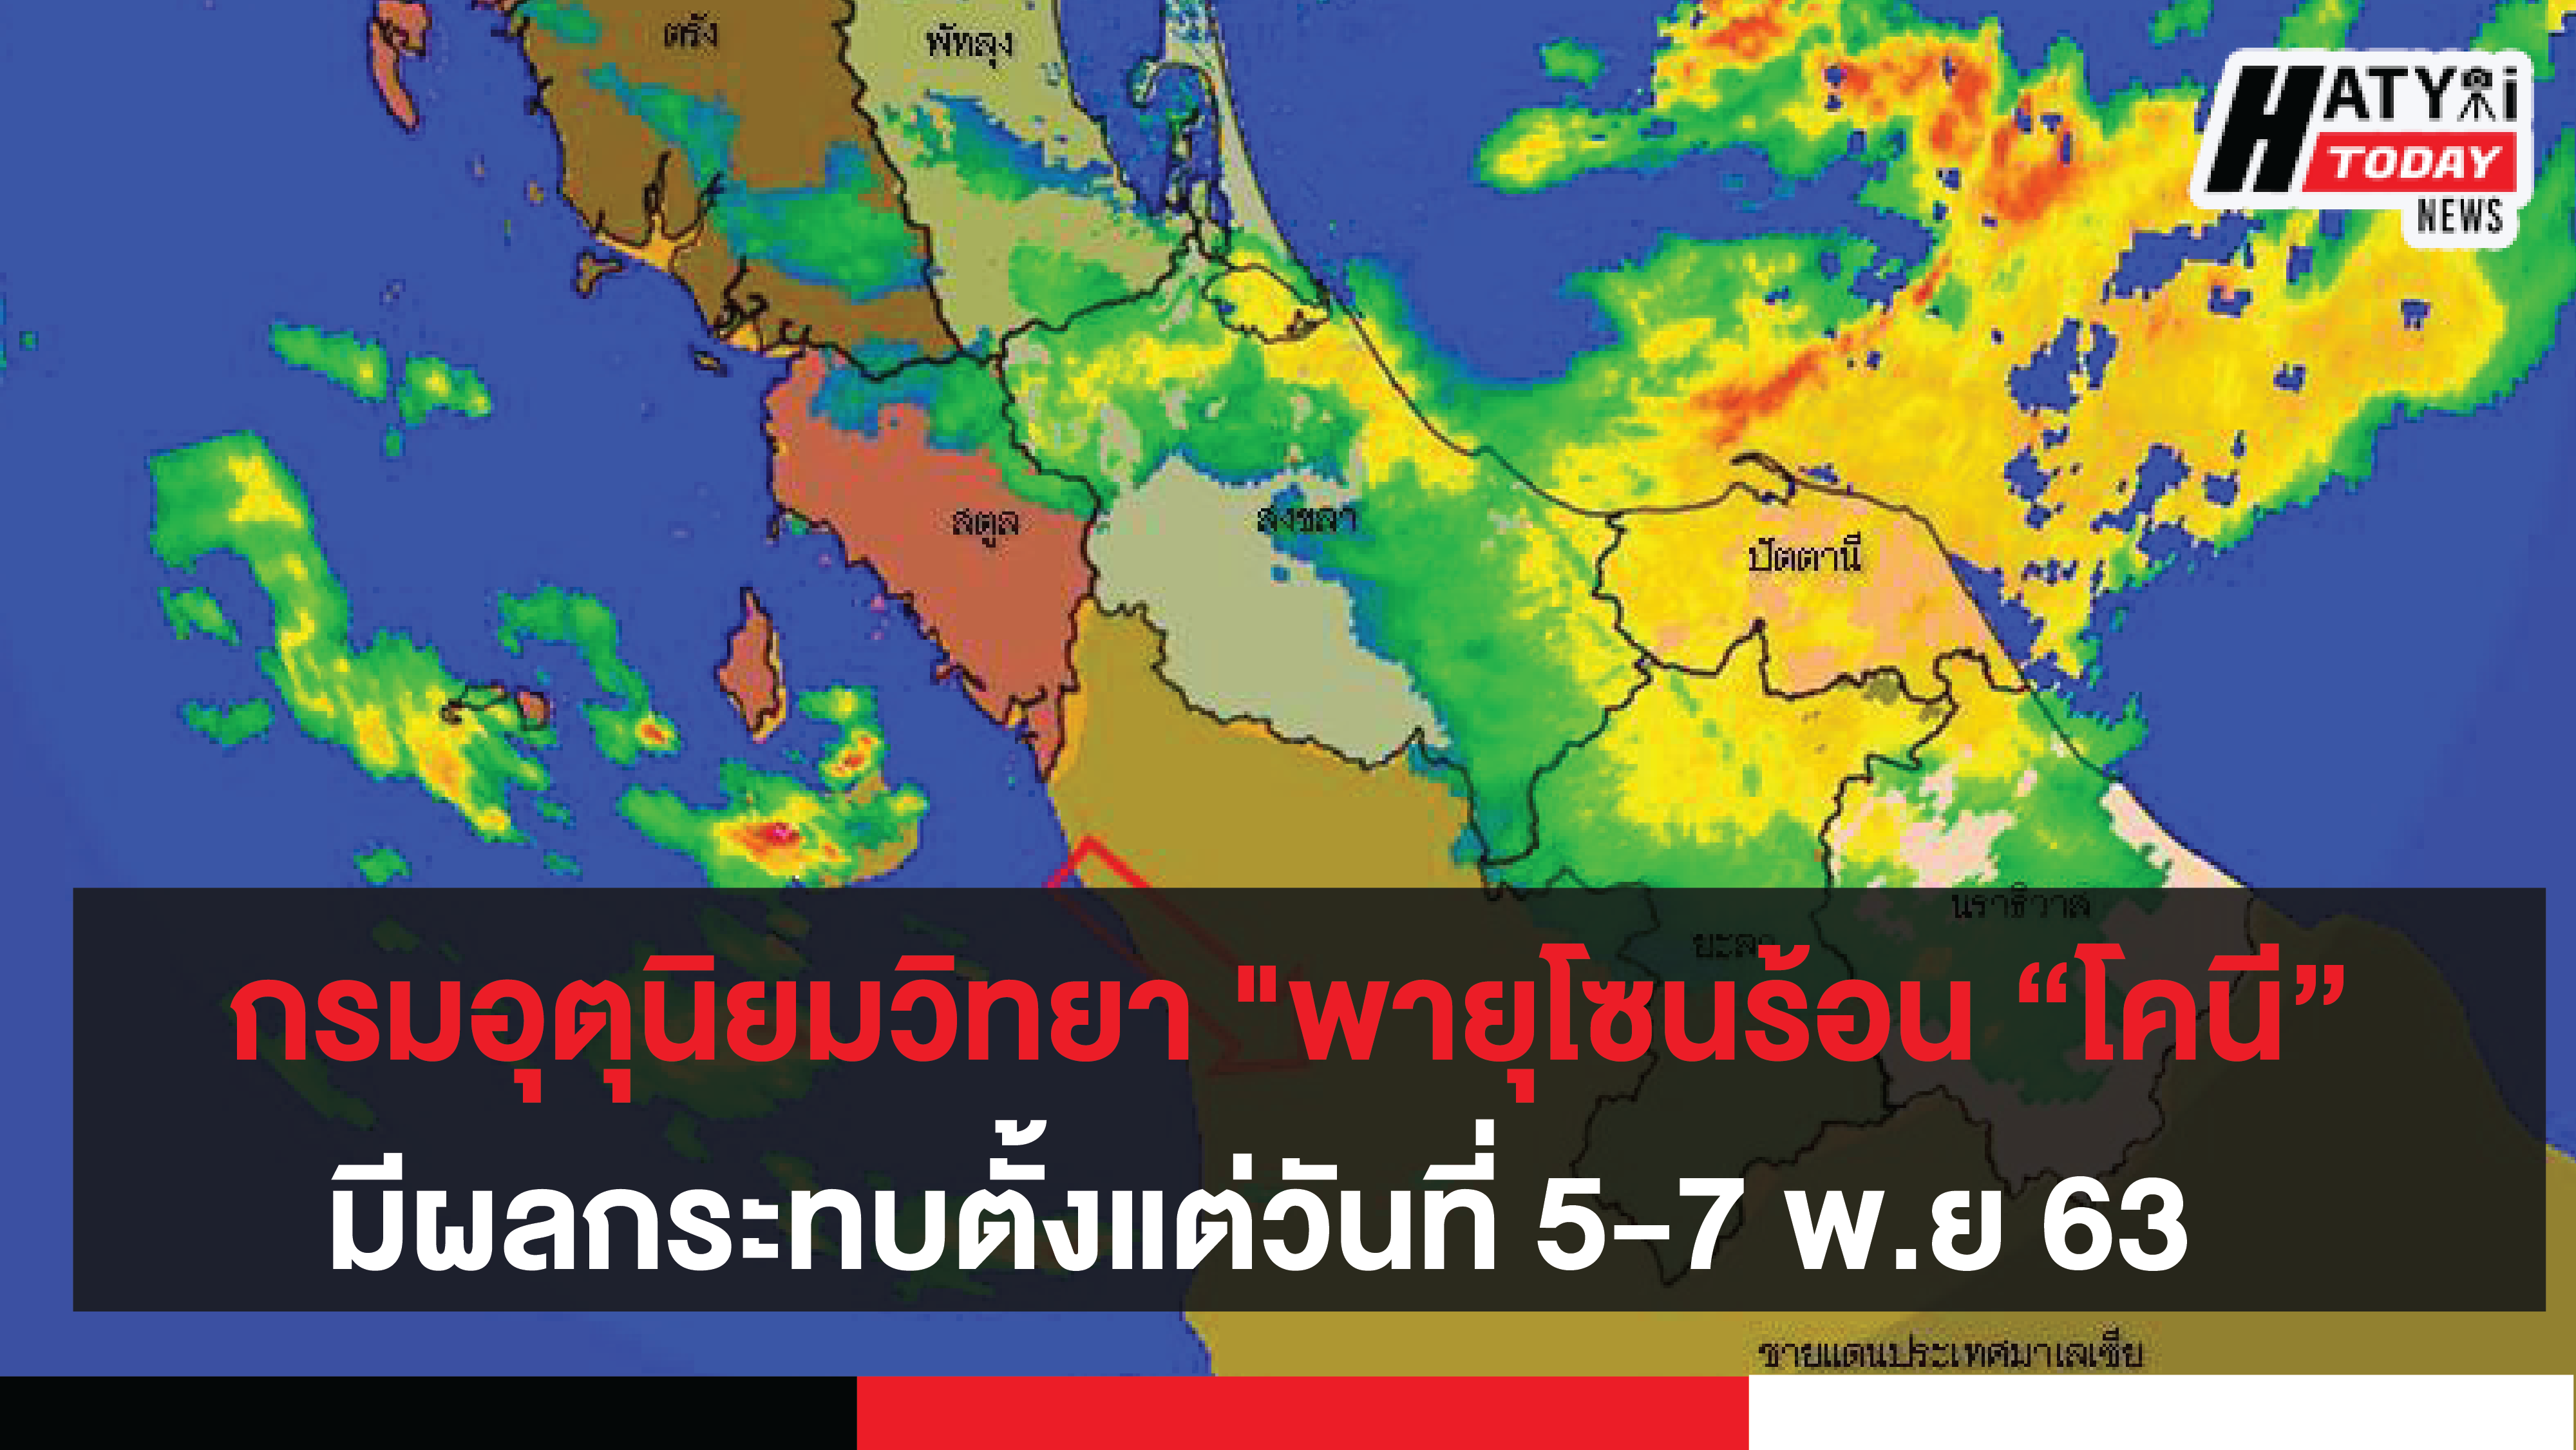 กรมอุตุนิยมวิทยา พายุโซนร้อน โคนี (พายุระดับ 3) บริเวณทะเลจีนใต้ตอนกลาง มีผลกระทบตั้งแต่วันที่ 5-7 พ.ย 63